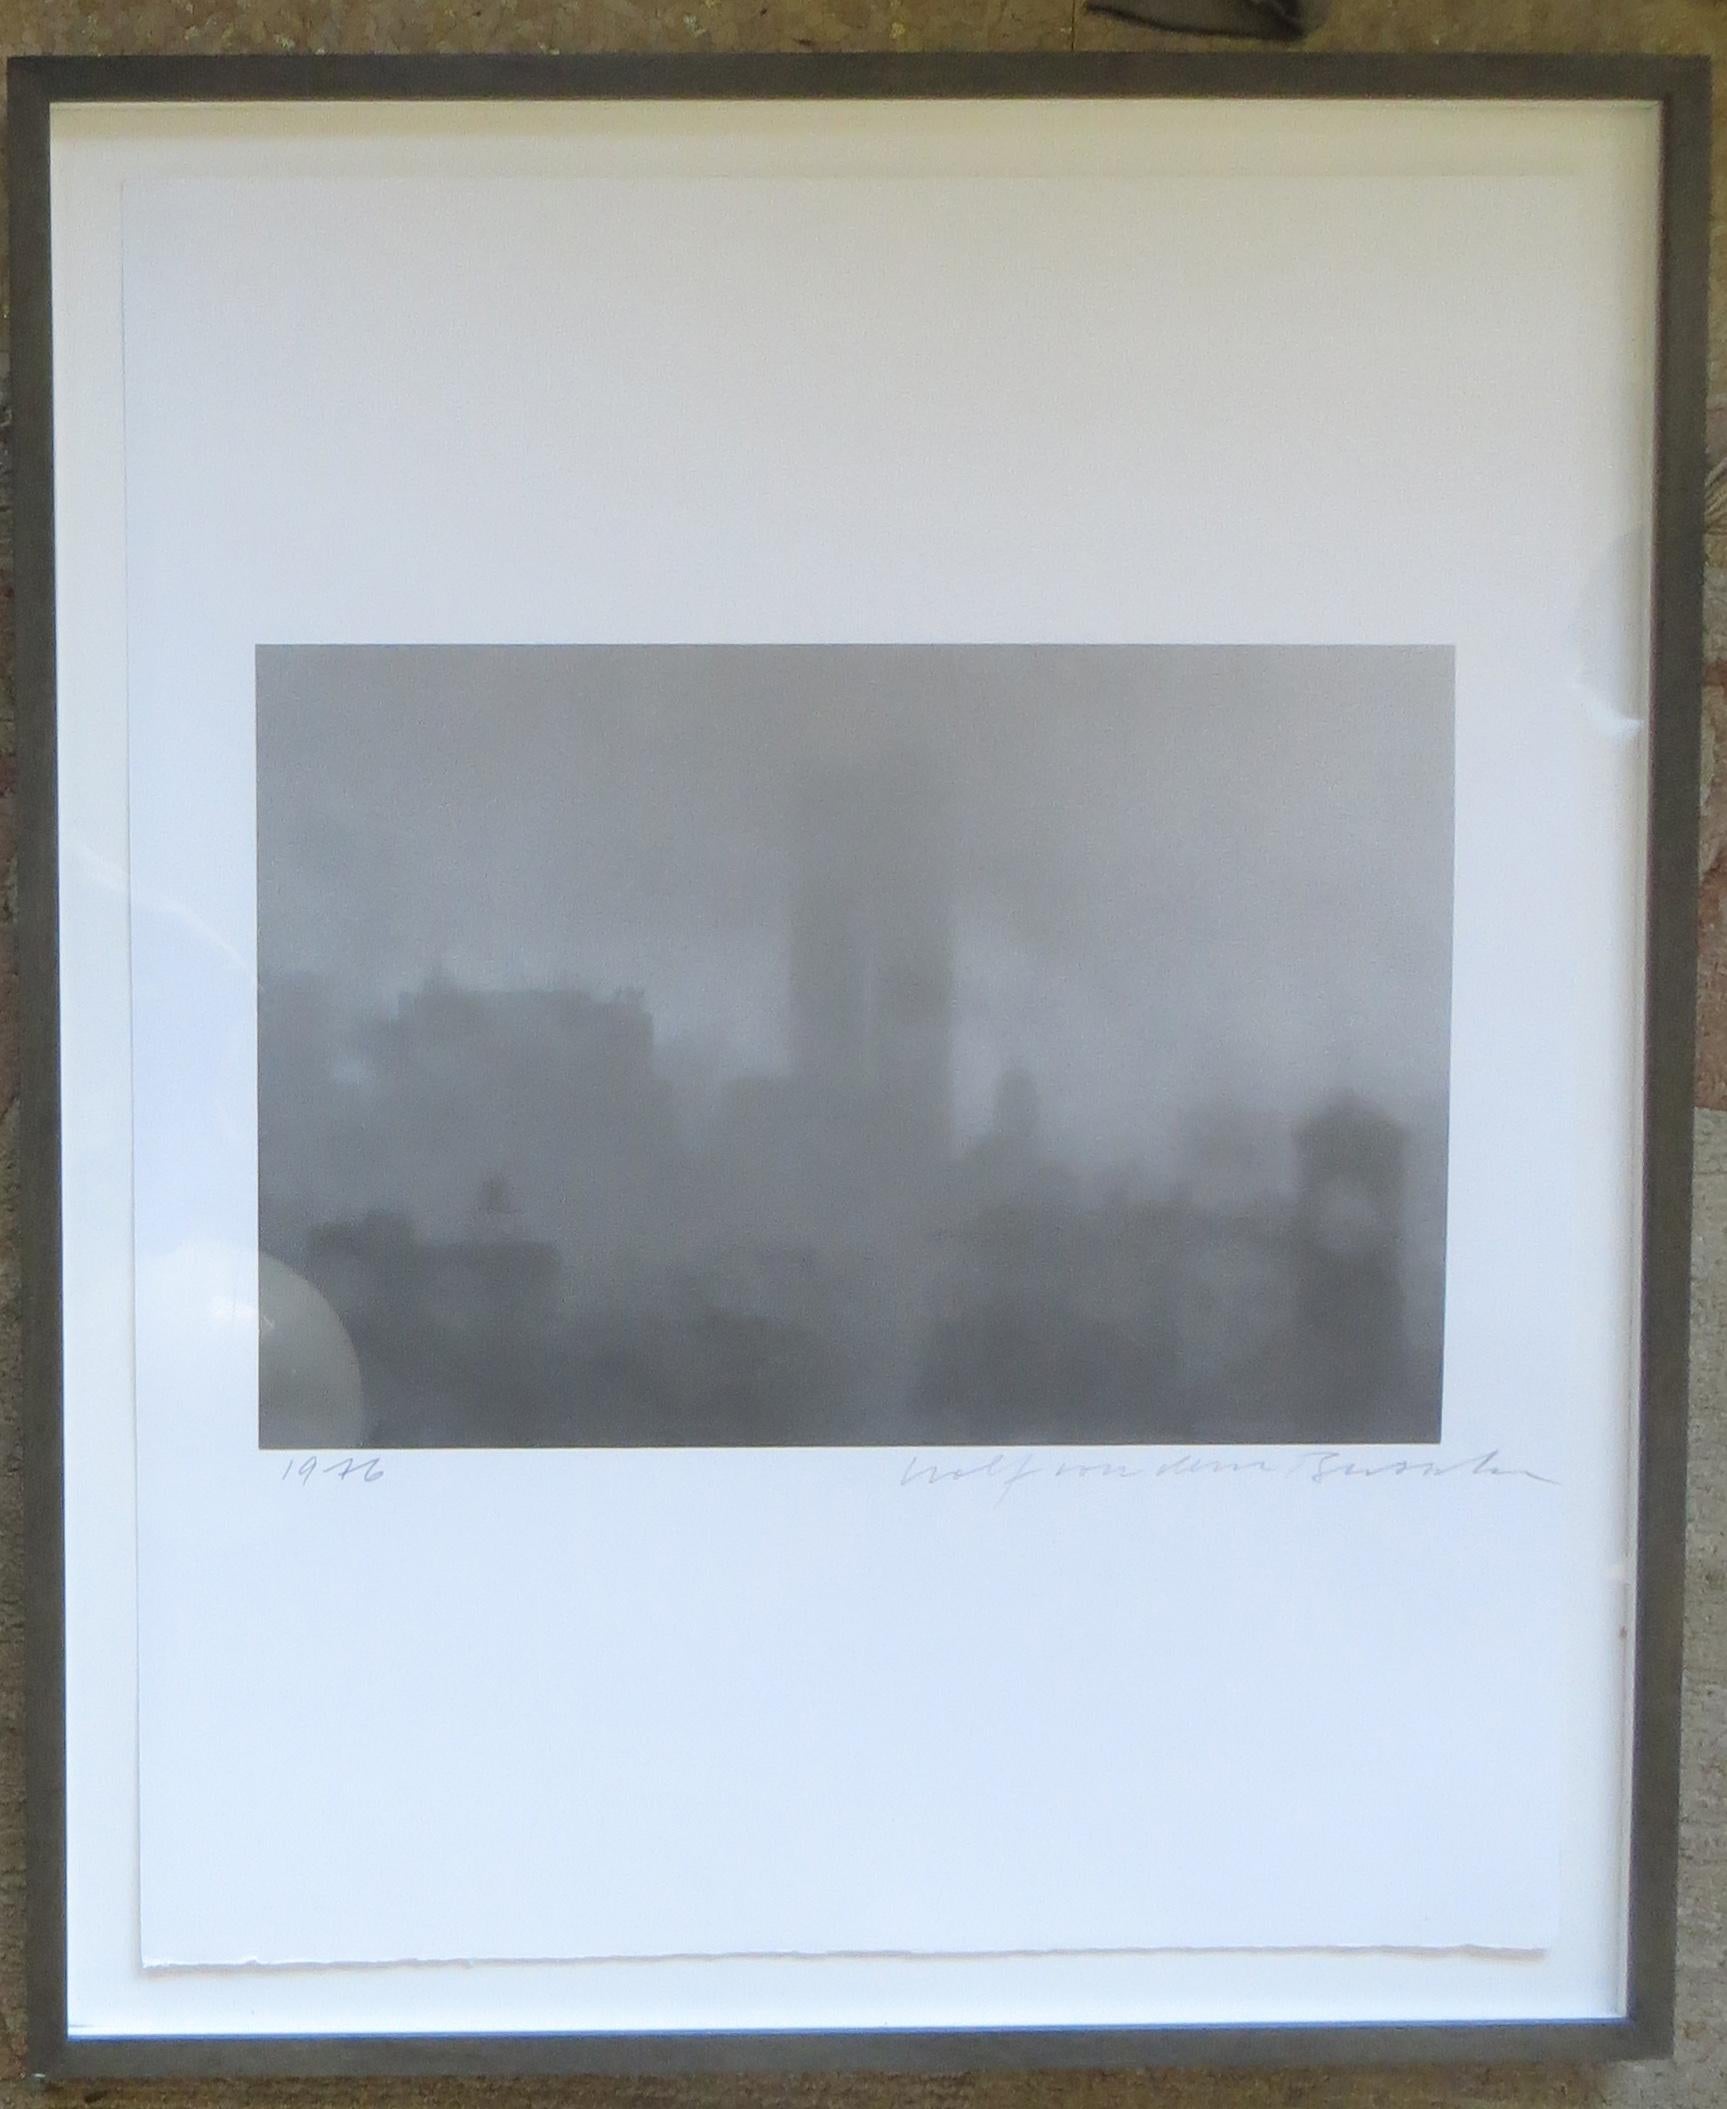 Washington Square mit Trade Center Towers II (Grau), Black and White Photograph, von Wolf von dem Bussche